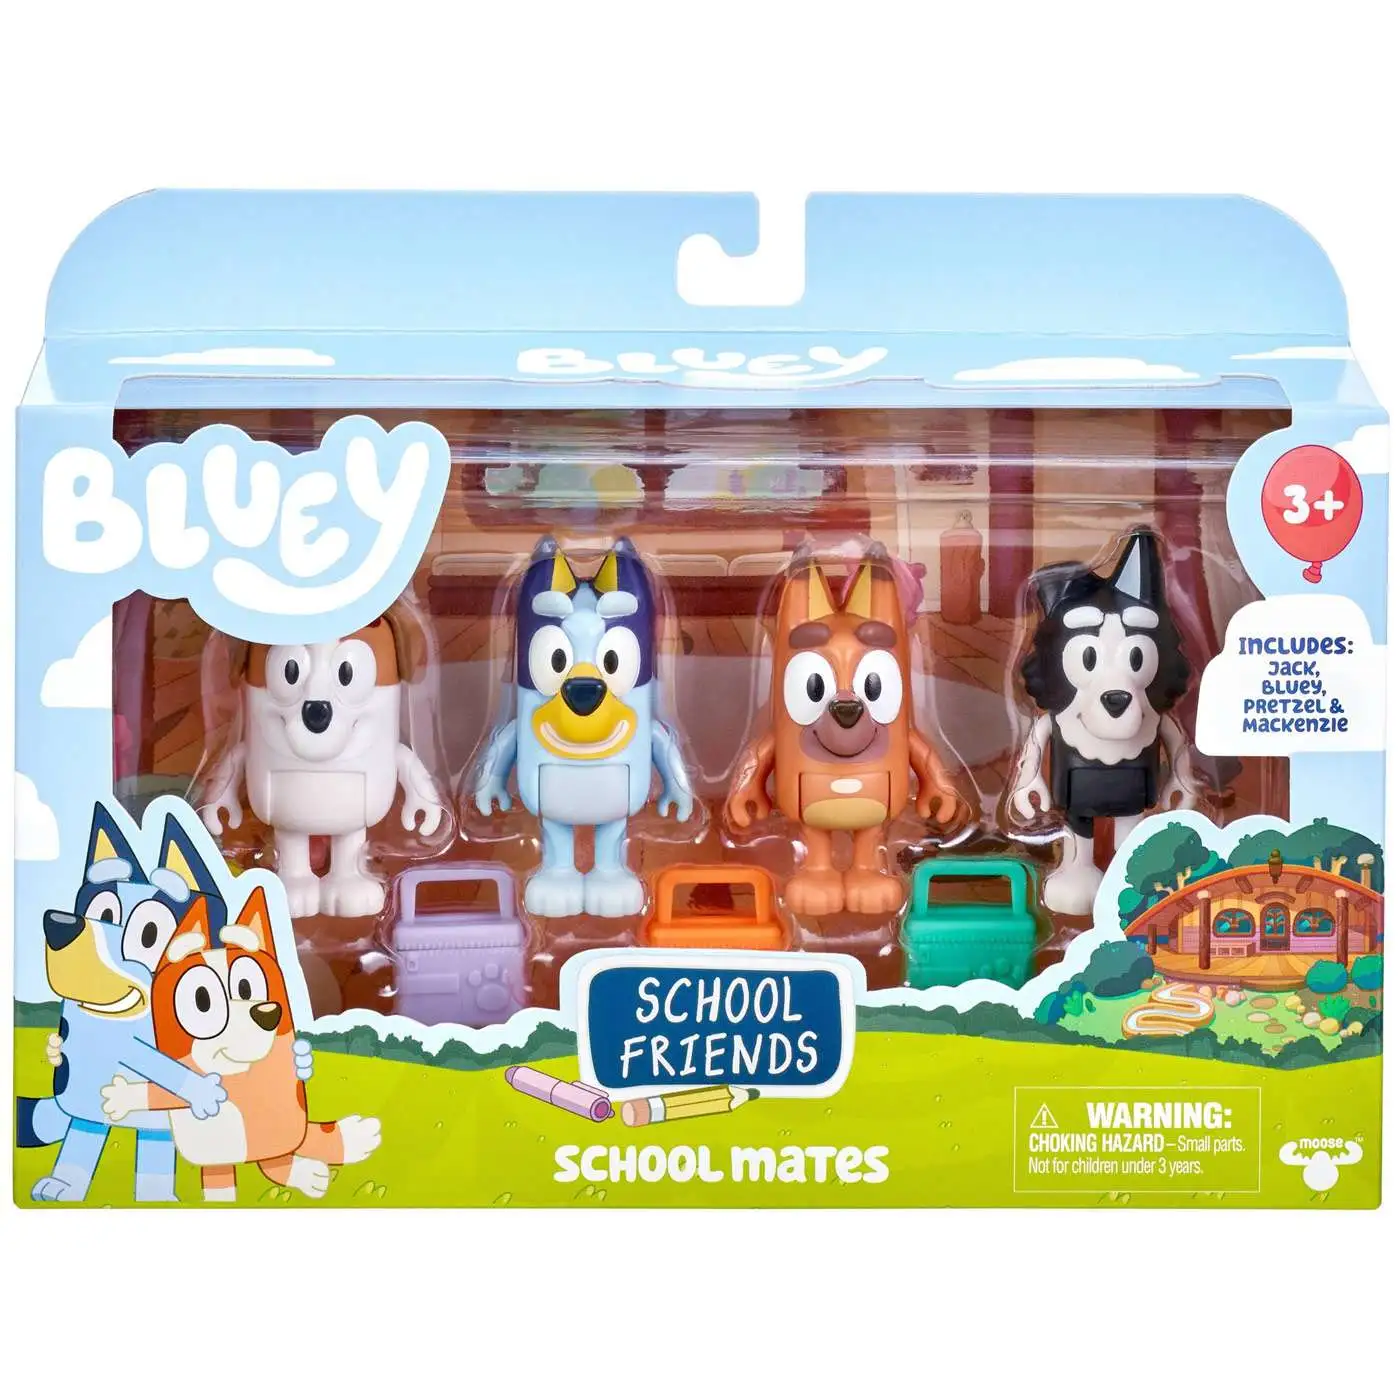 Bluey Bingo 8 Plush Starry-Eyed Moose Toys - ToyWiz